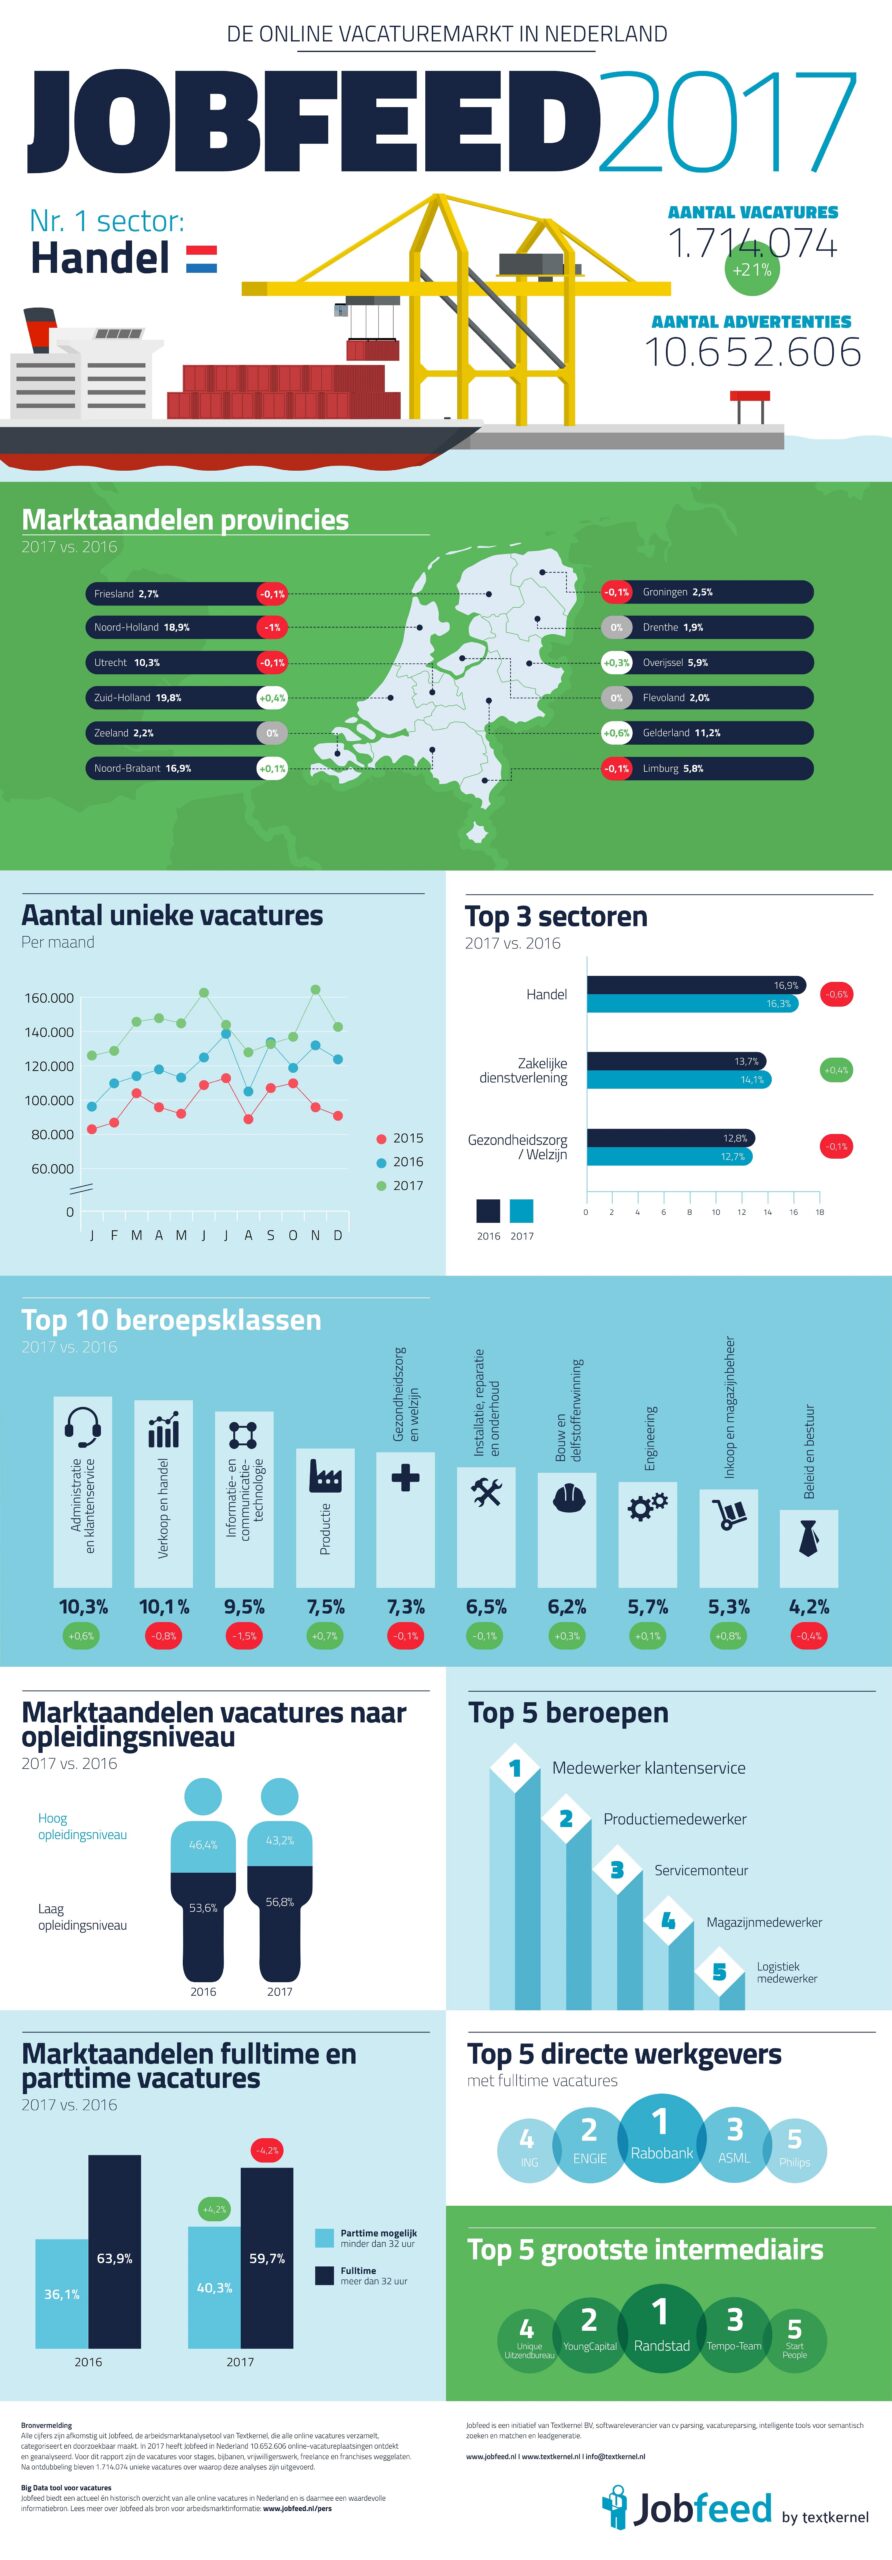 Jobfeed 2017, infographic over online vacaturemarkt